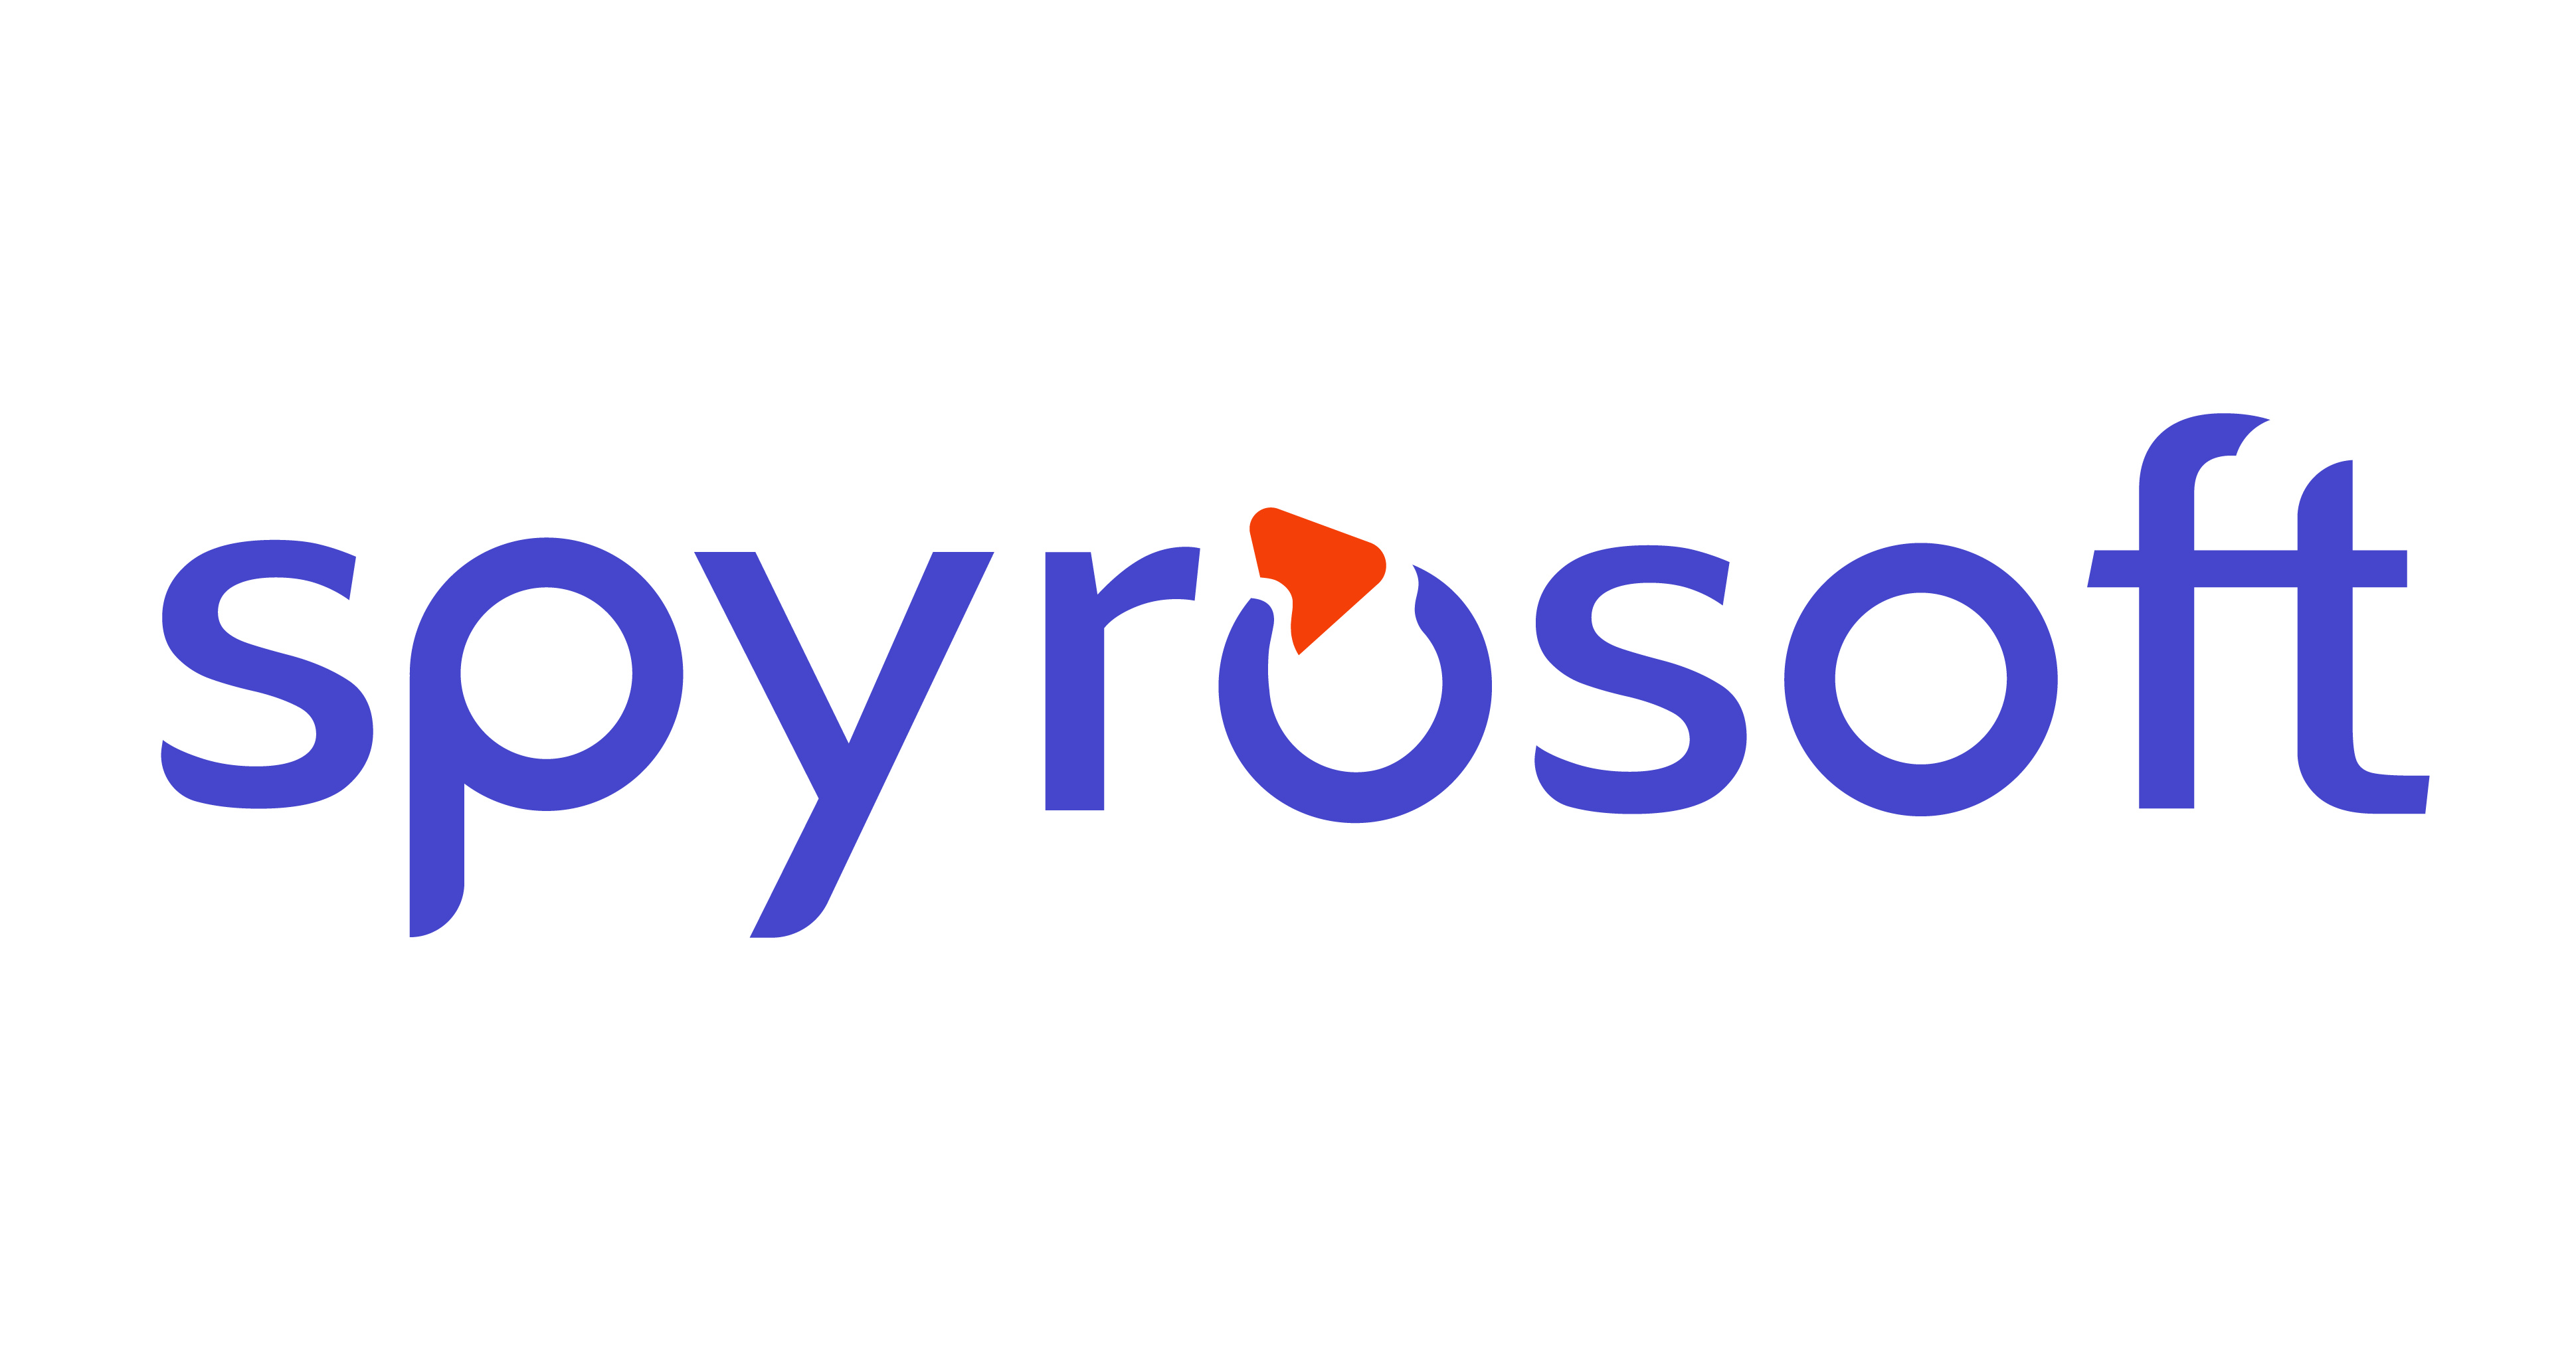 Spyrosoft Group cu o creștere a veniturilor în primul trimestru al anului 2022 și o nouă strategie pentru 2022-2026